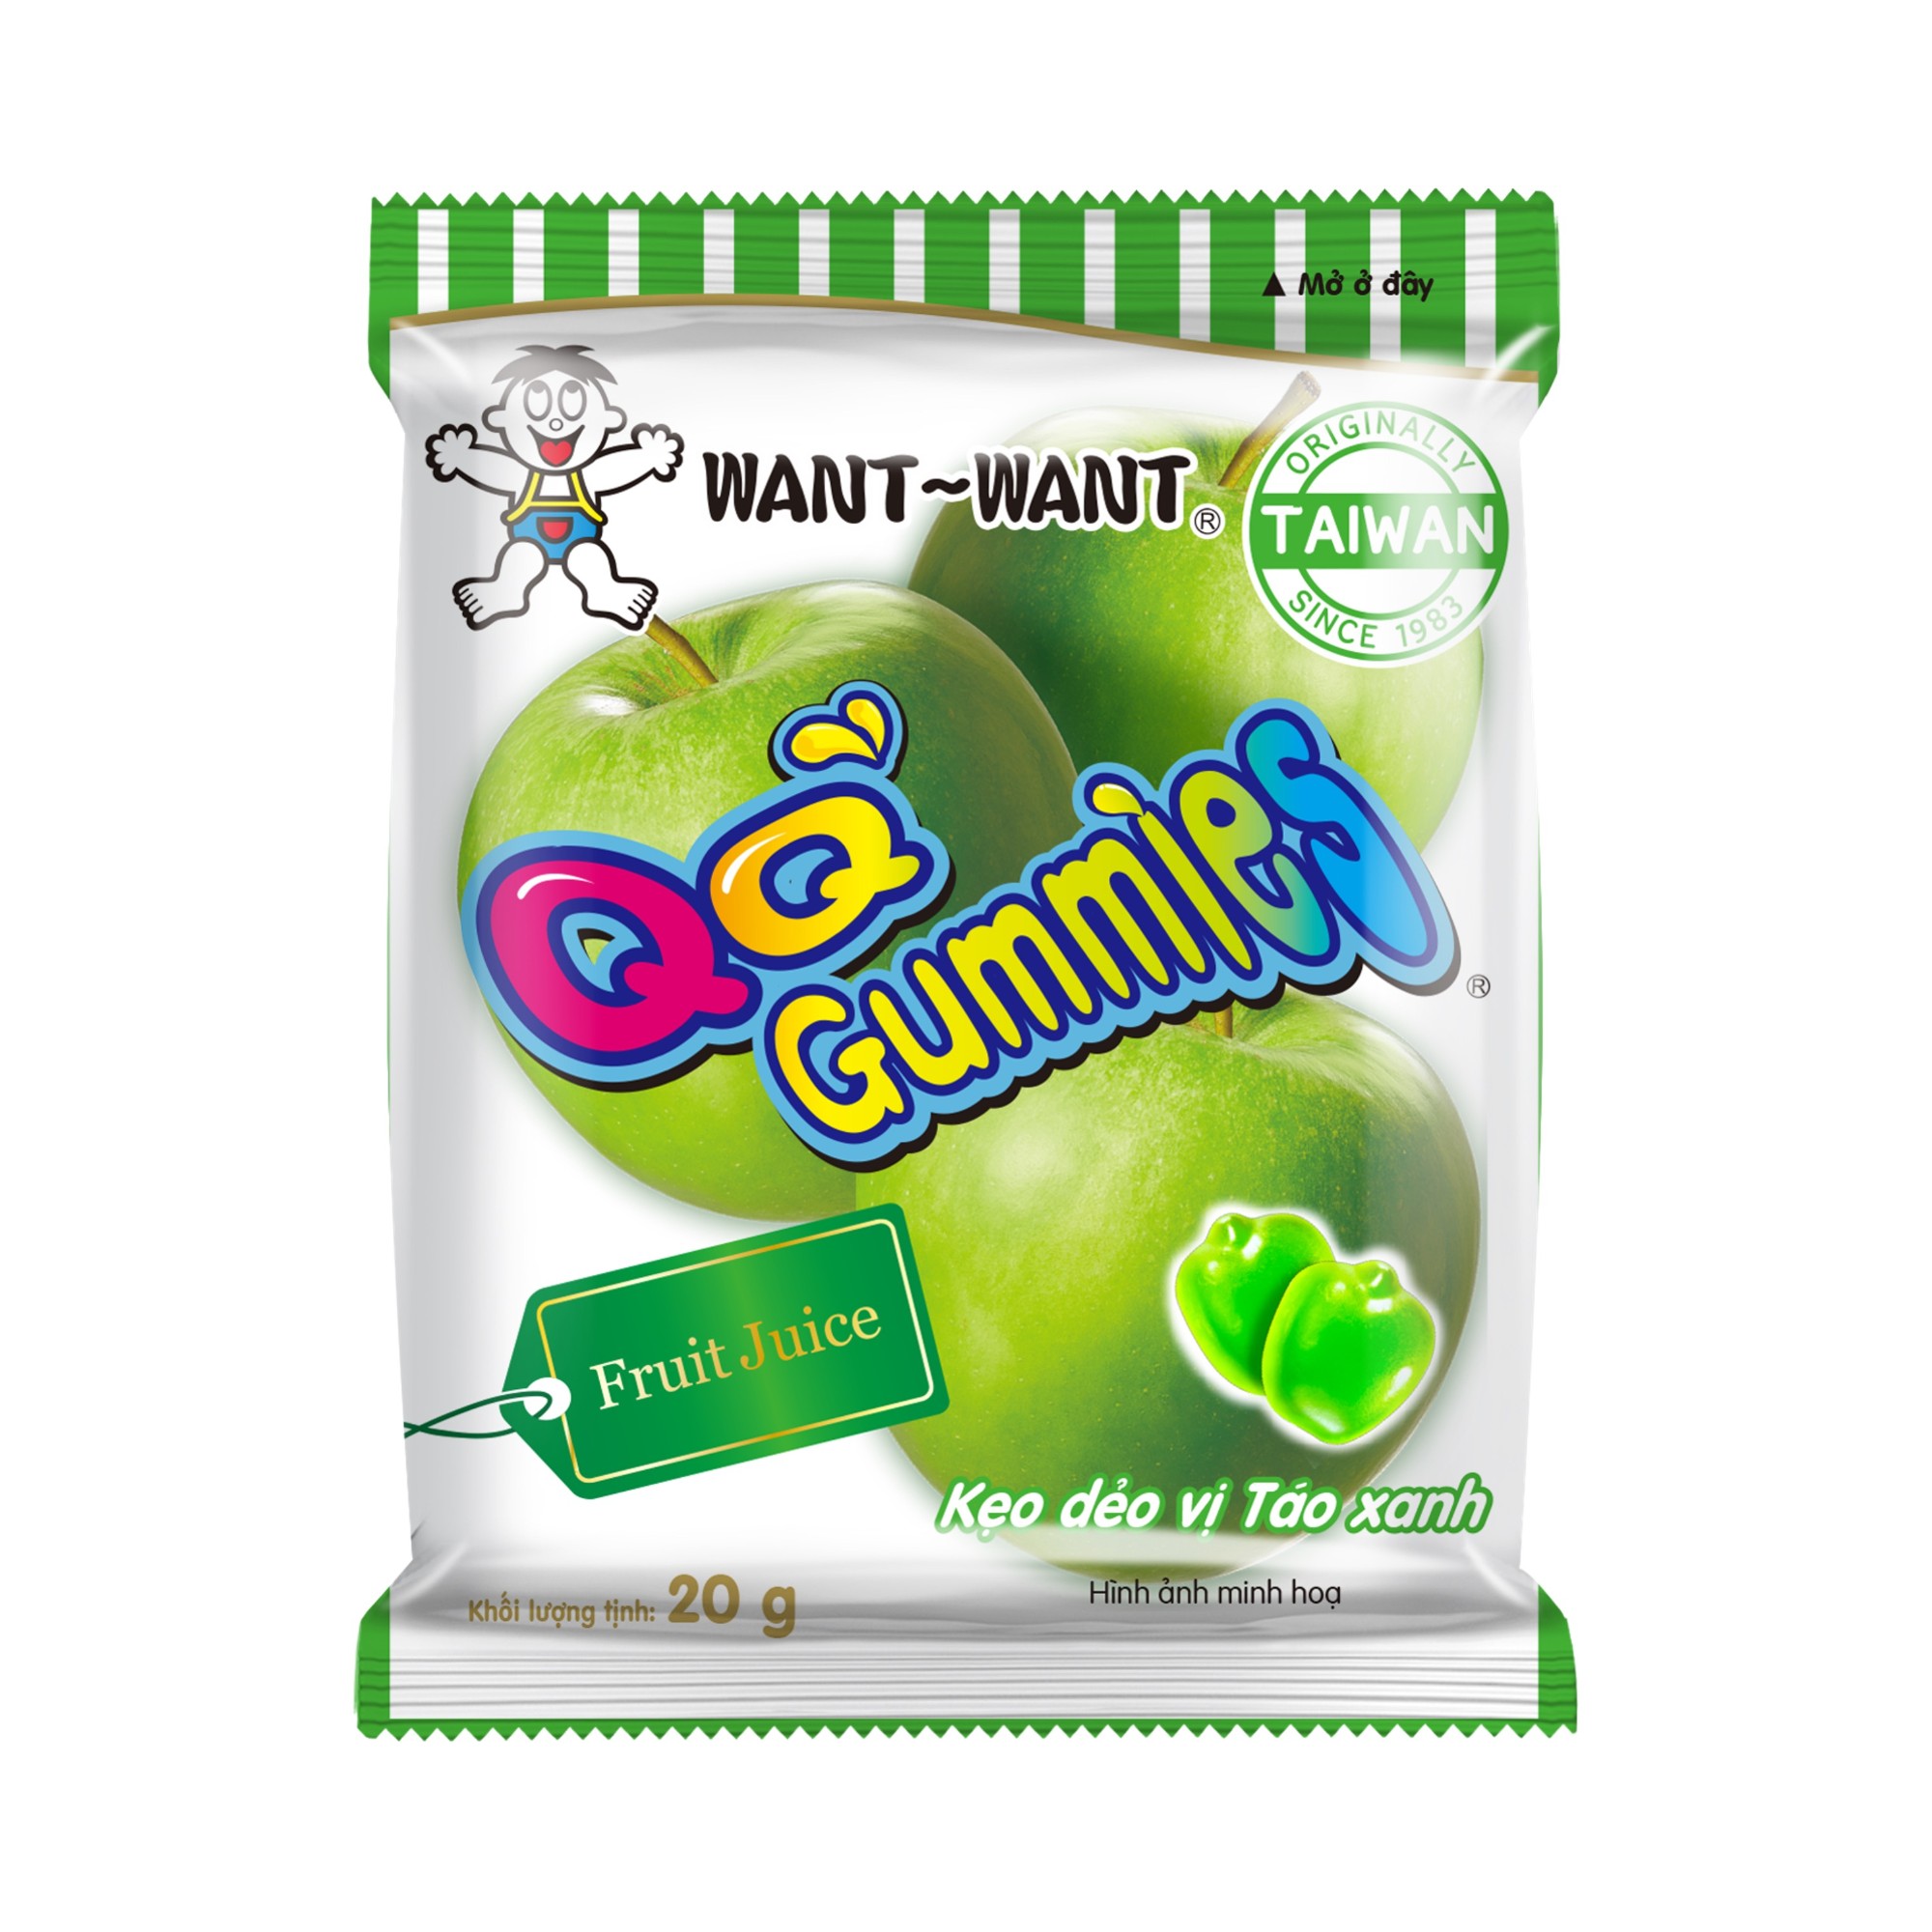 WANT WANT QQ Gummies Green Apple Flavor 20g